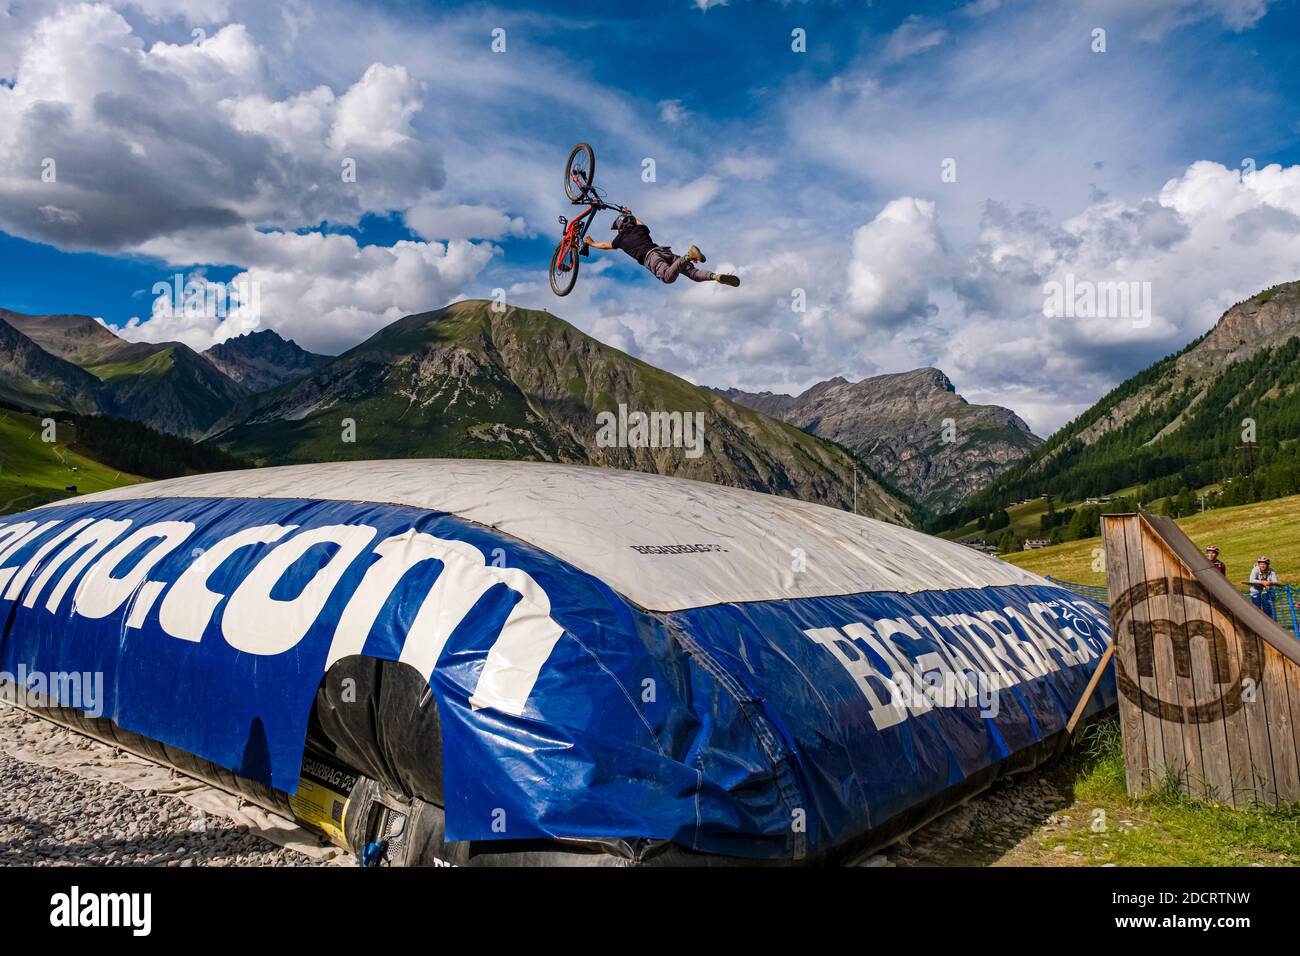 Un ciclista de descenso está practicando un salto difícil con la seguridad de aterrizar en un gran airbag en el Mottolino Bike Park, que rodea las montañas de Livi Foto de stock